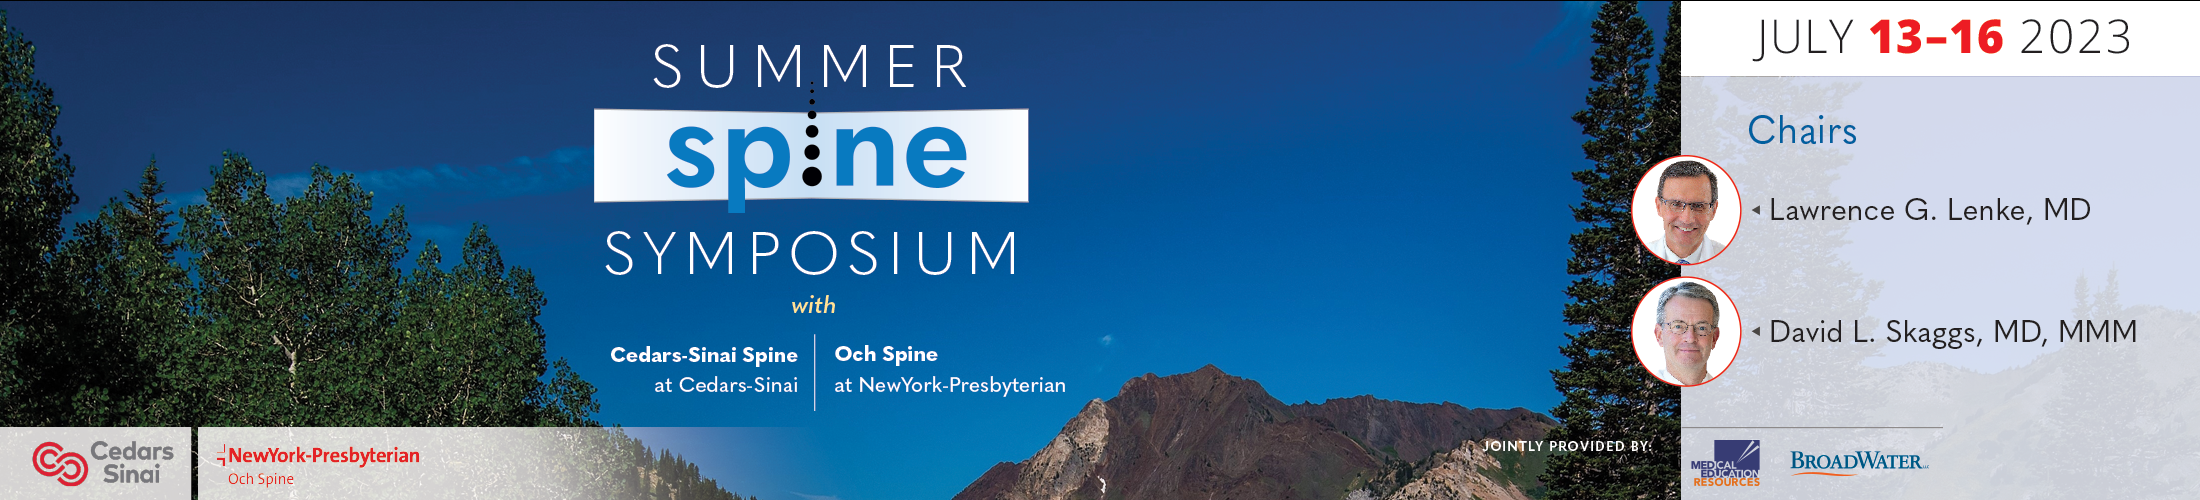 Summer Spine Symposium 2023